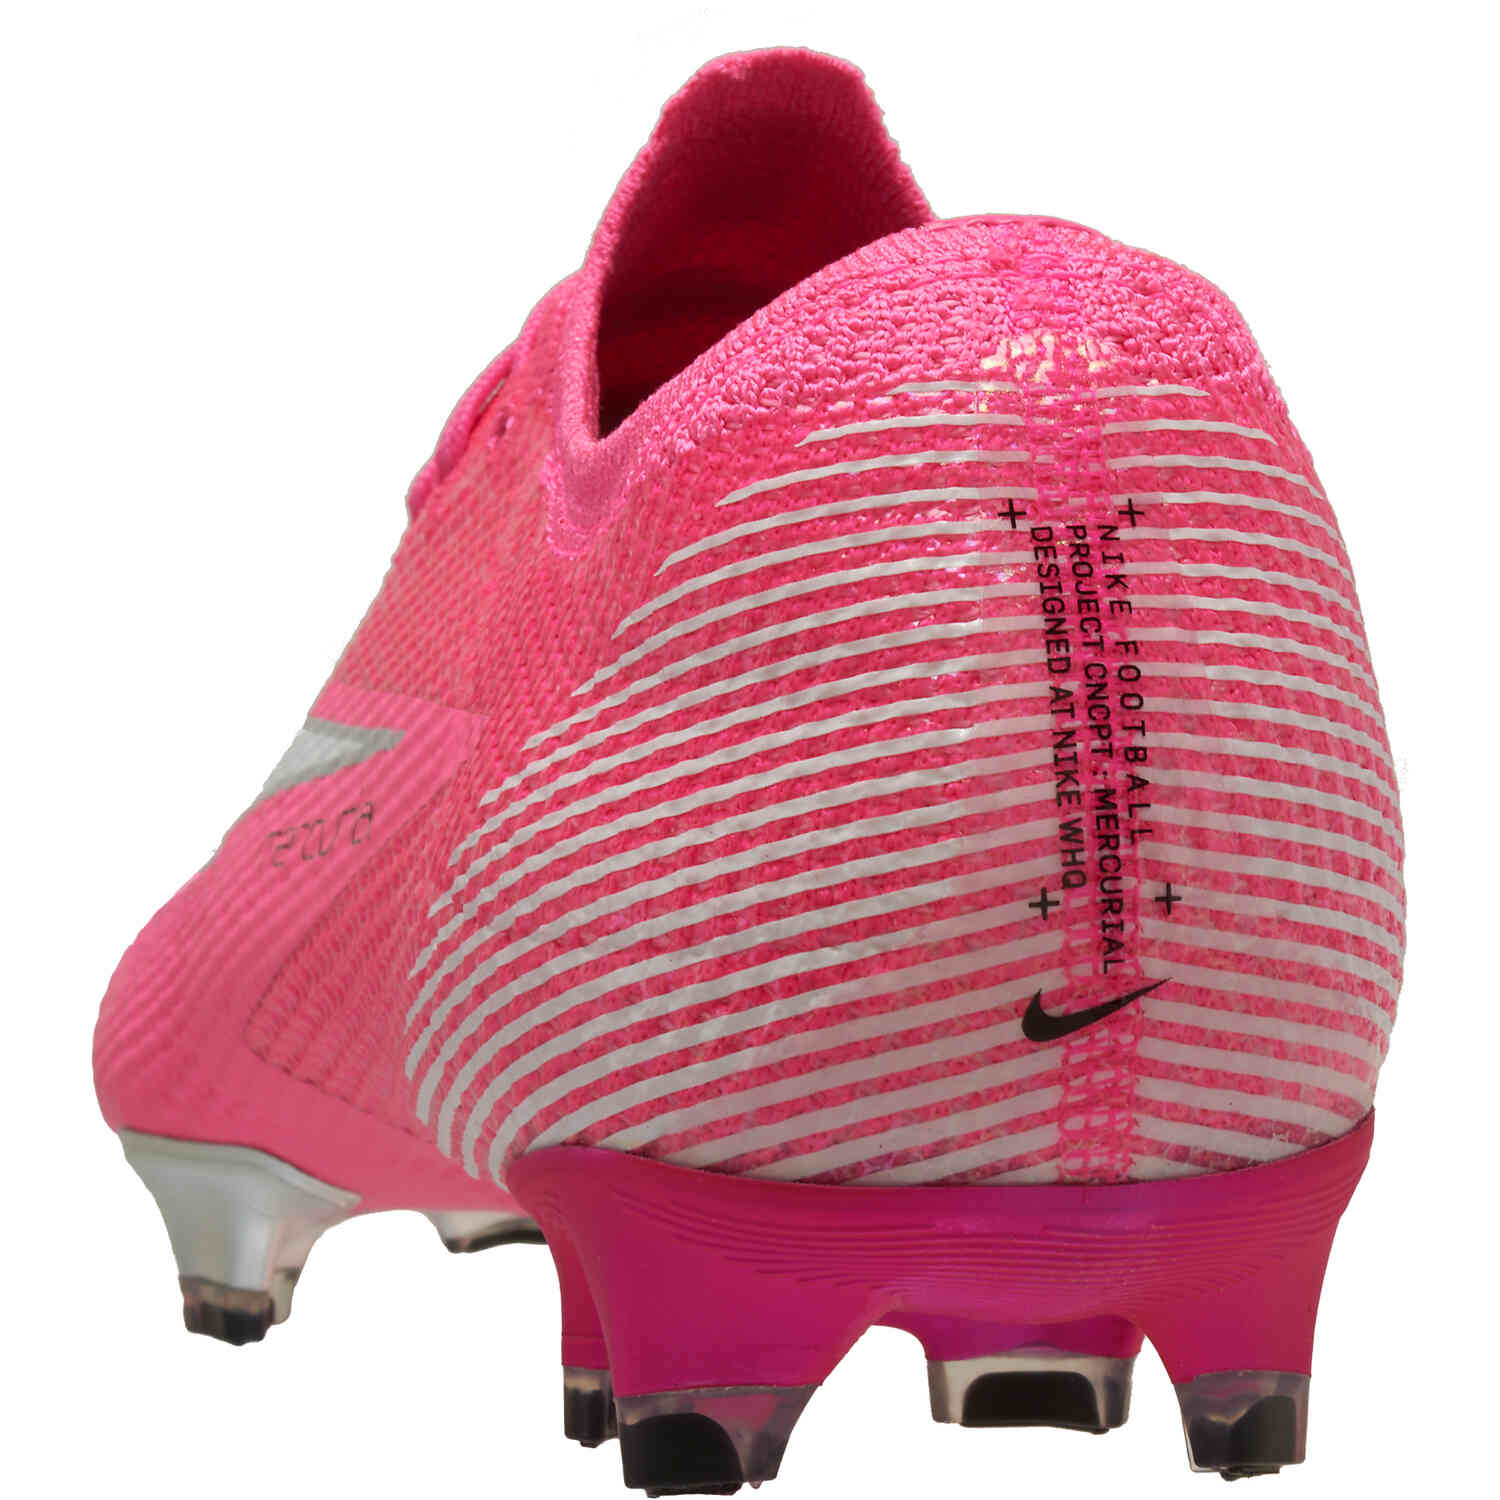 nike mercurial vapor 13 mbappe rosa elite fg soccer cleat